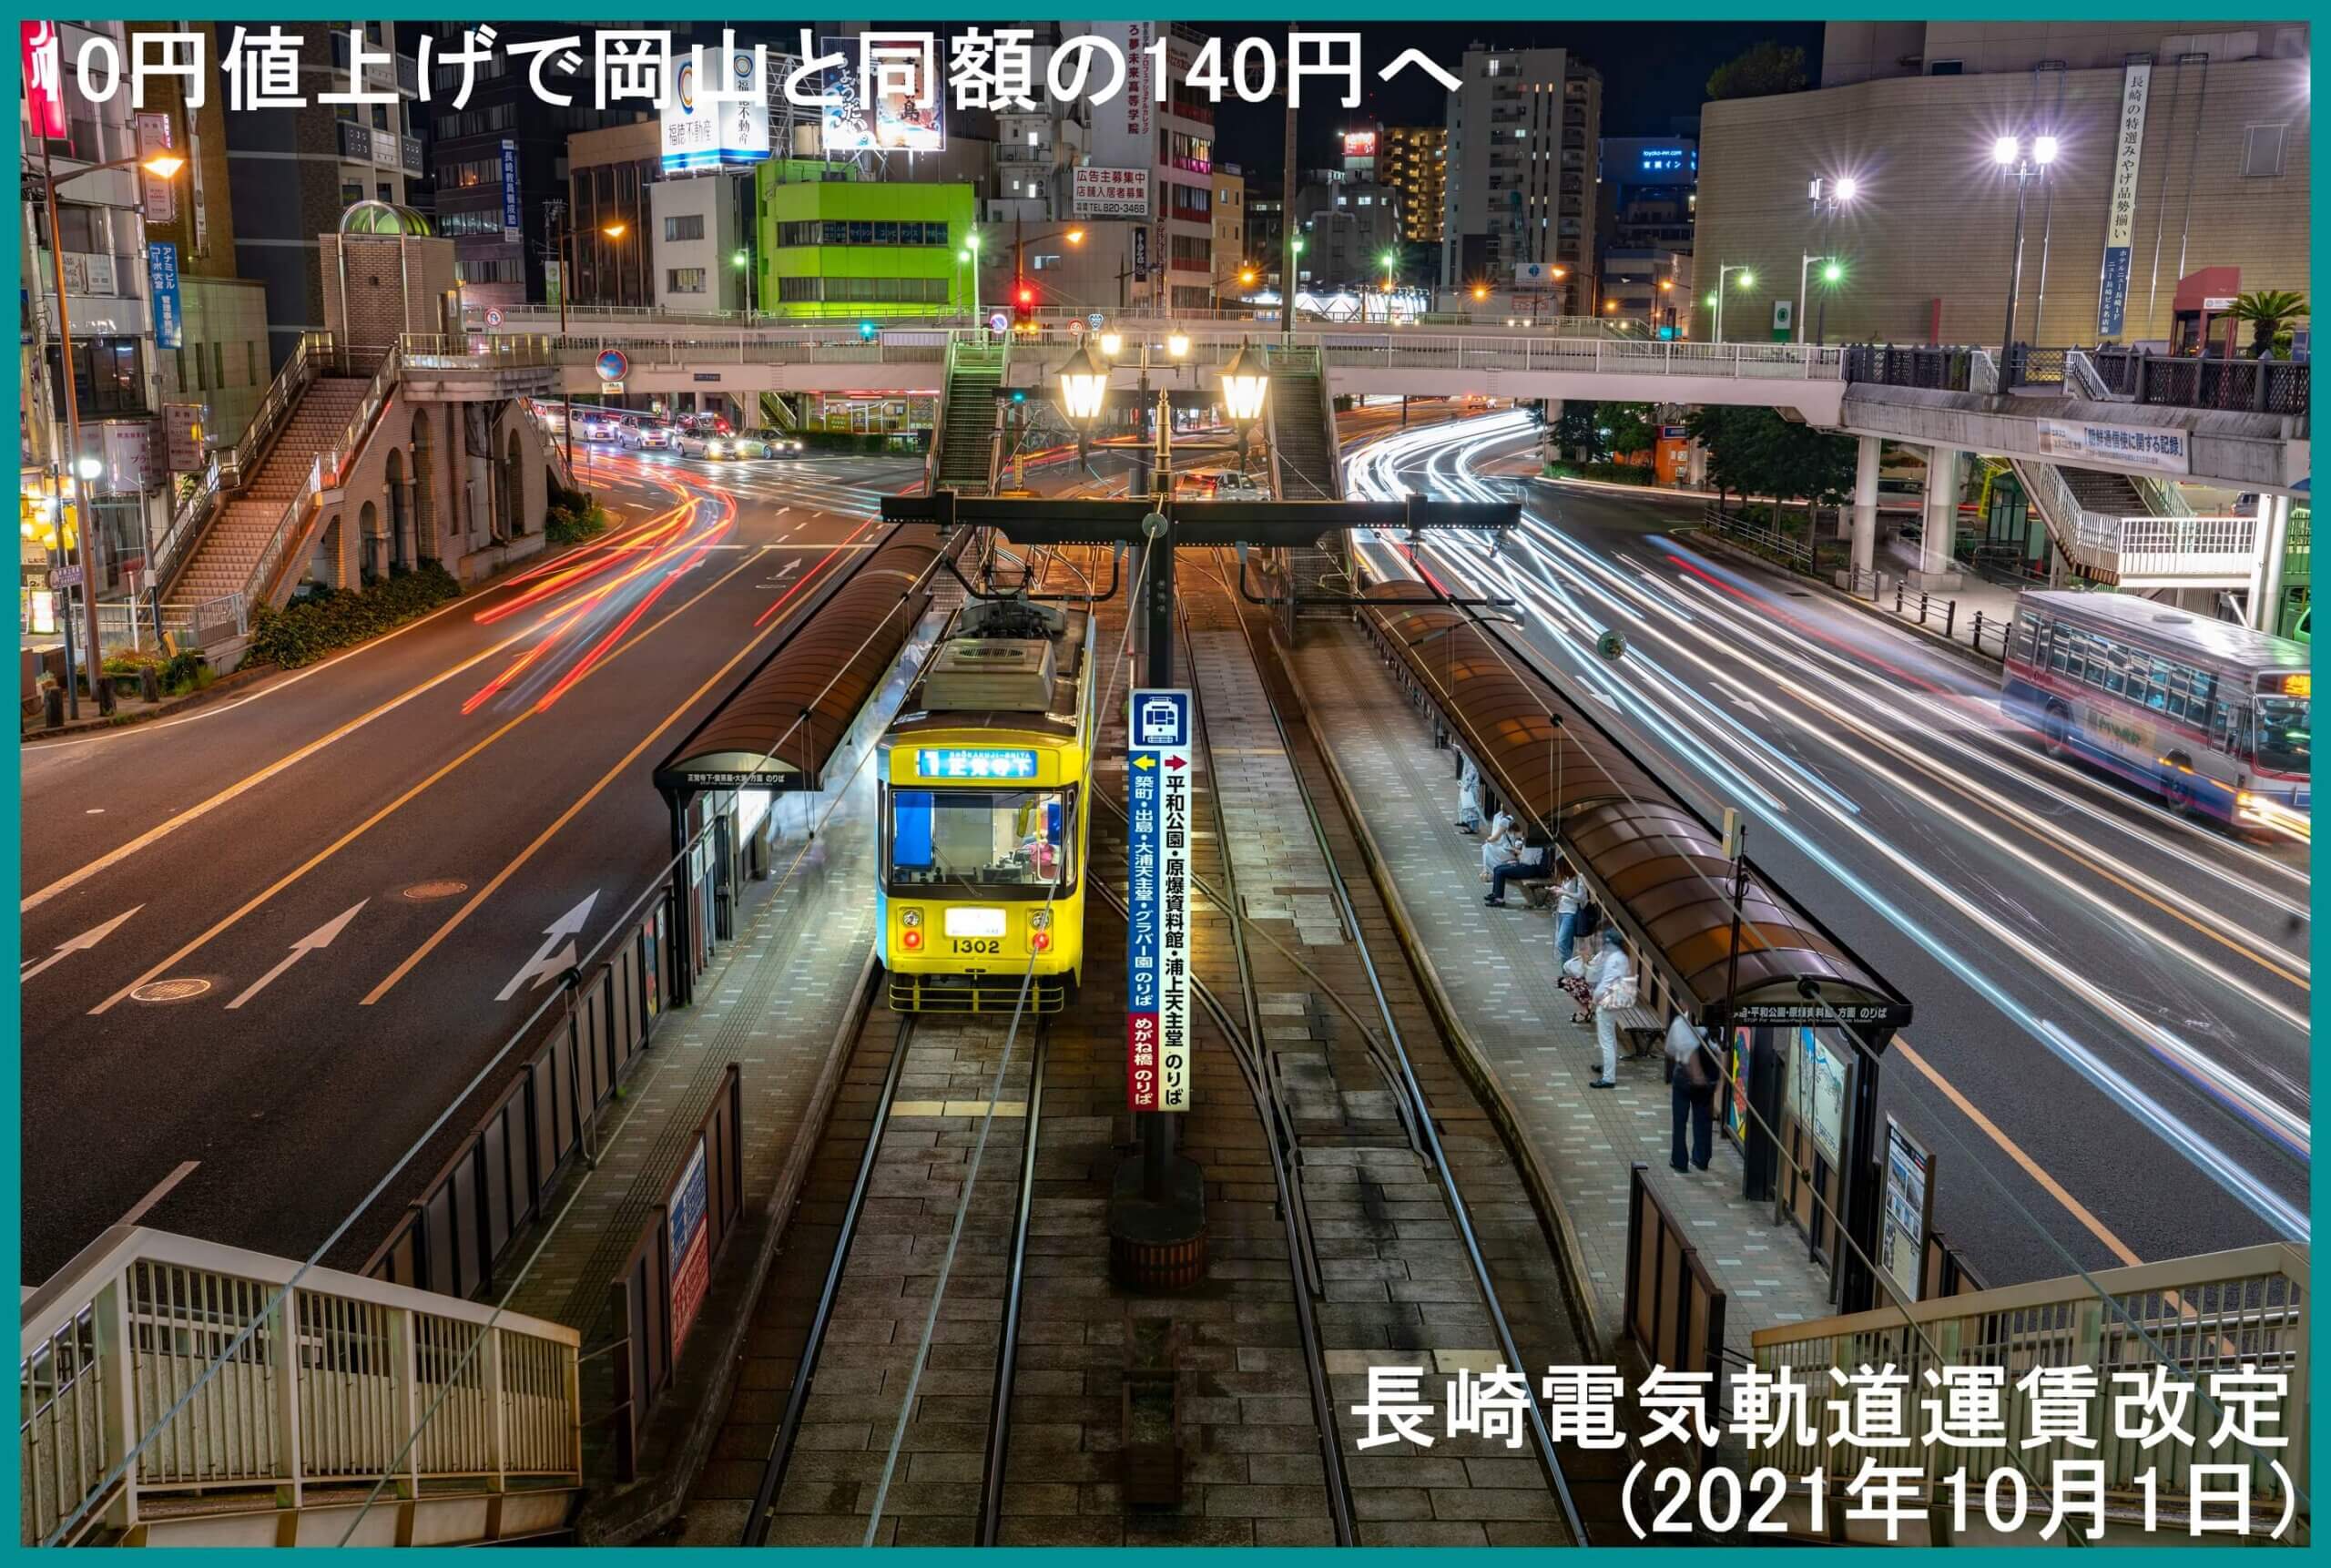 10円値上げで岡山と同額の140円へ 長崎電気軌道運賃改定(2021年10月1日) 時刻表の達人